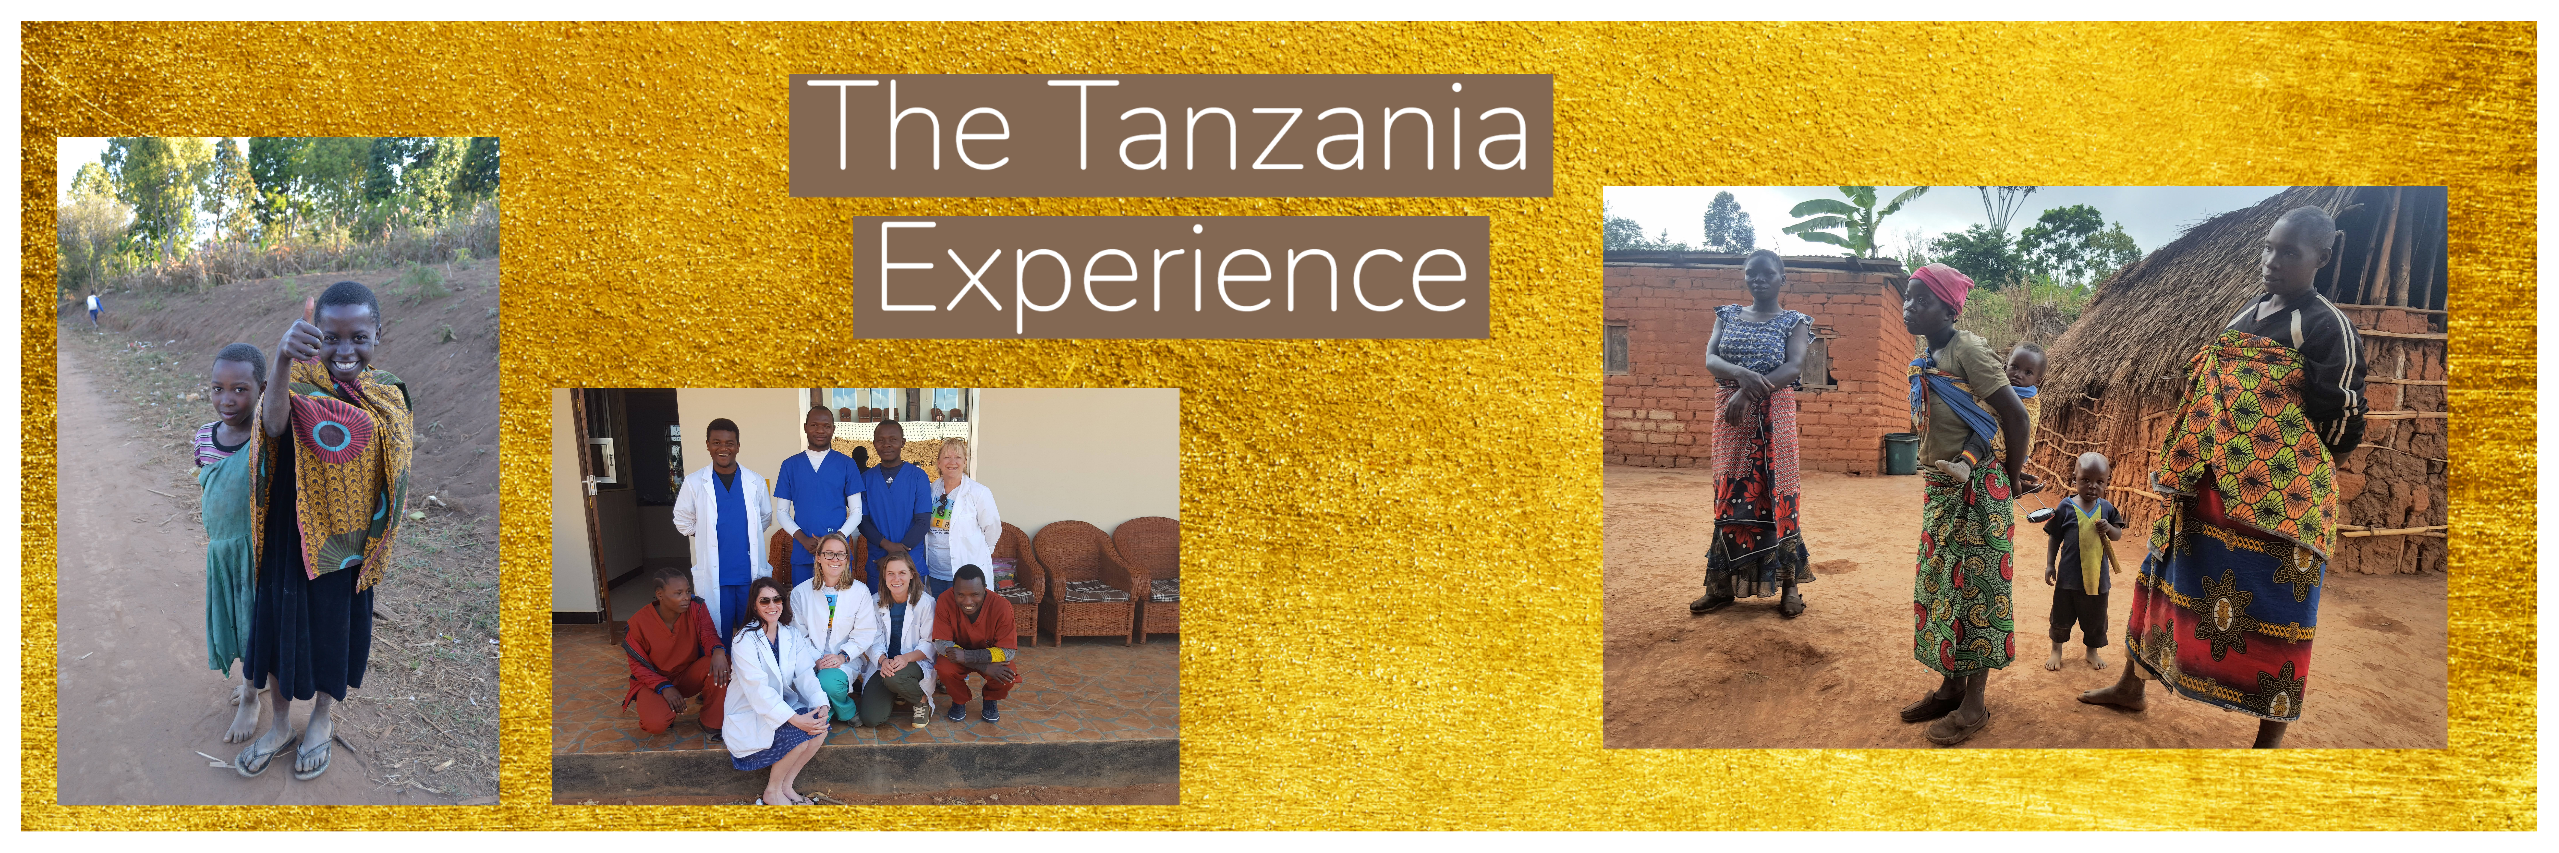 The Tanzania Experience